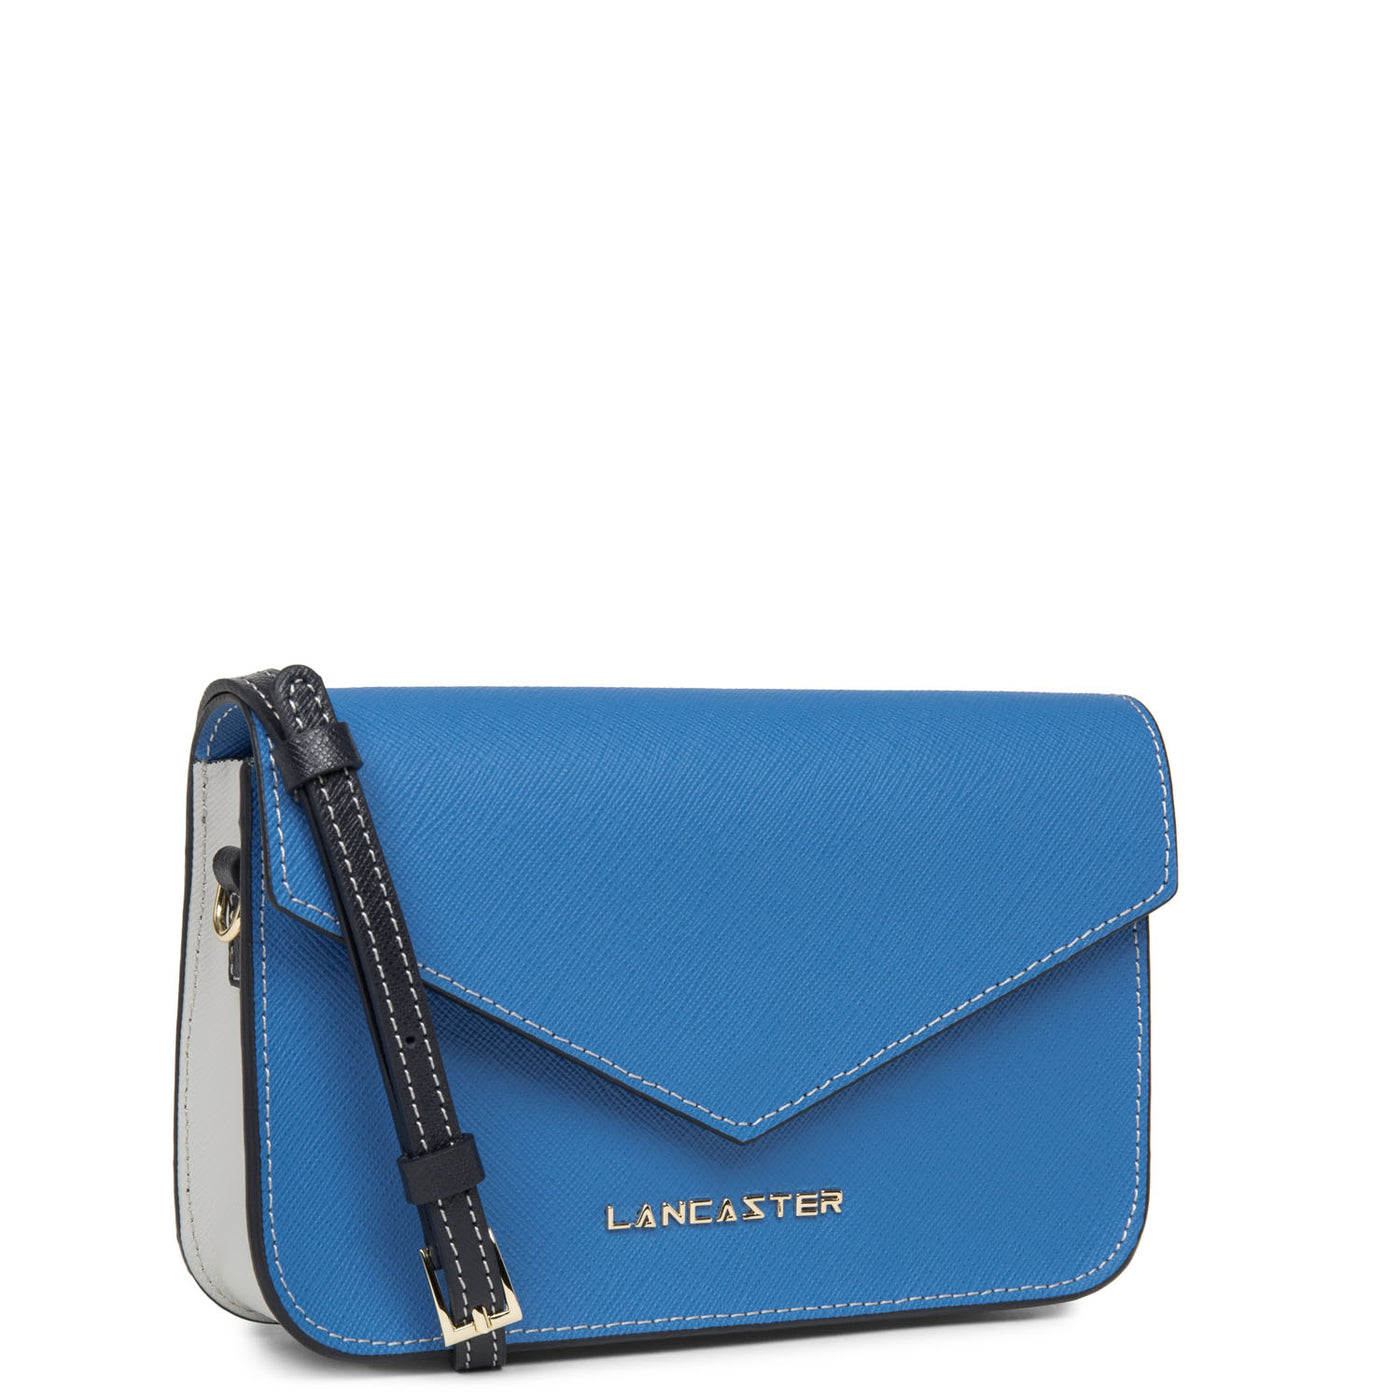 petit sac trotteur - saffiano signature #couleur_bleu-cyan-gris-perle-bleu-fonce